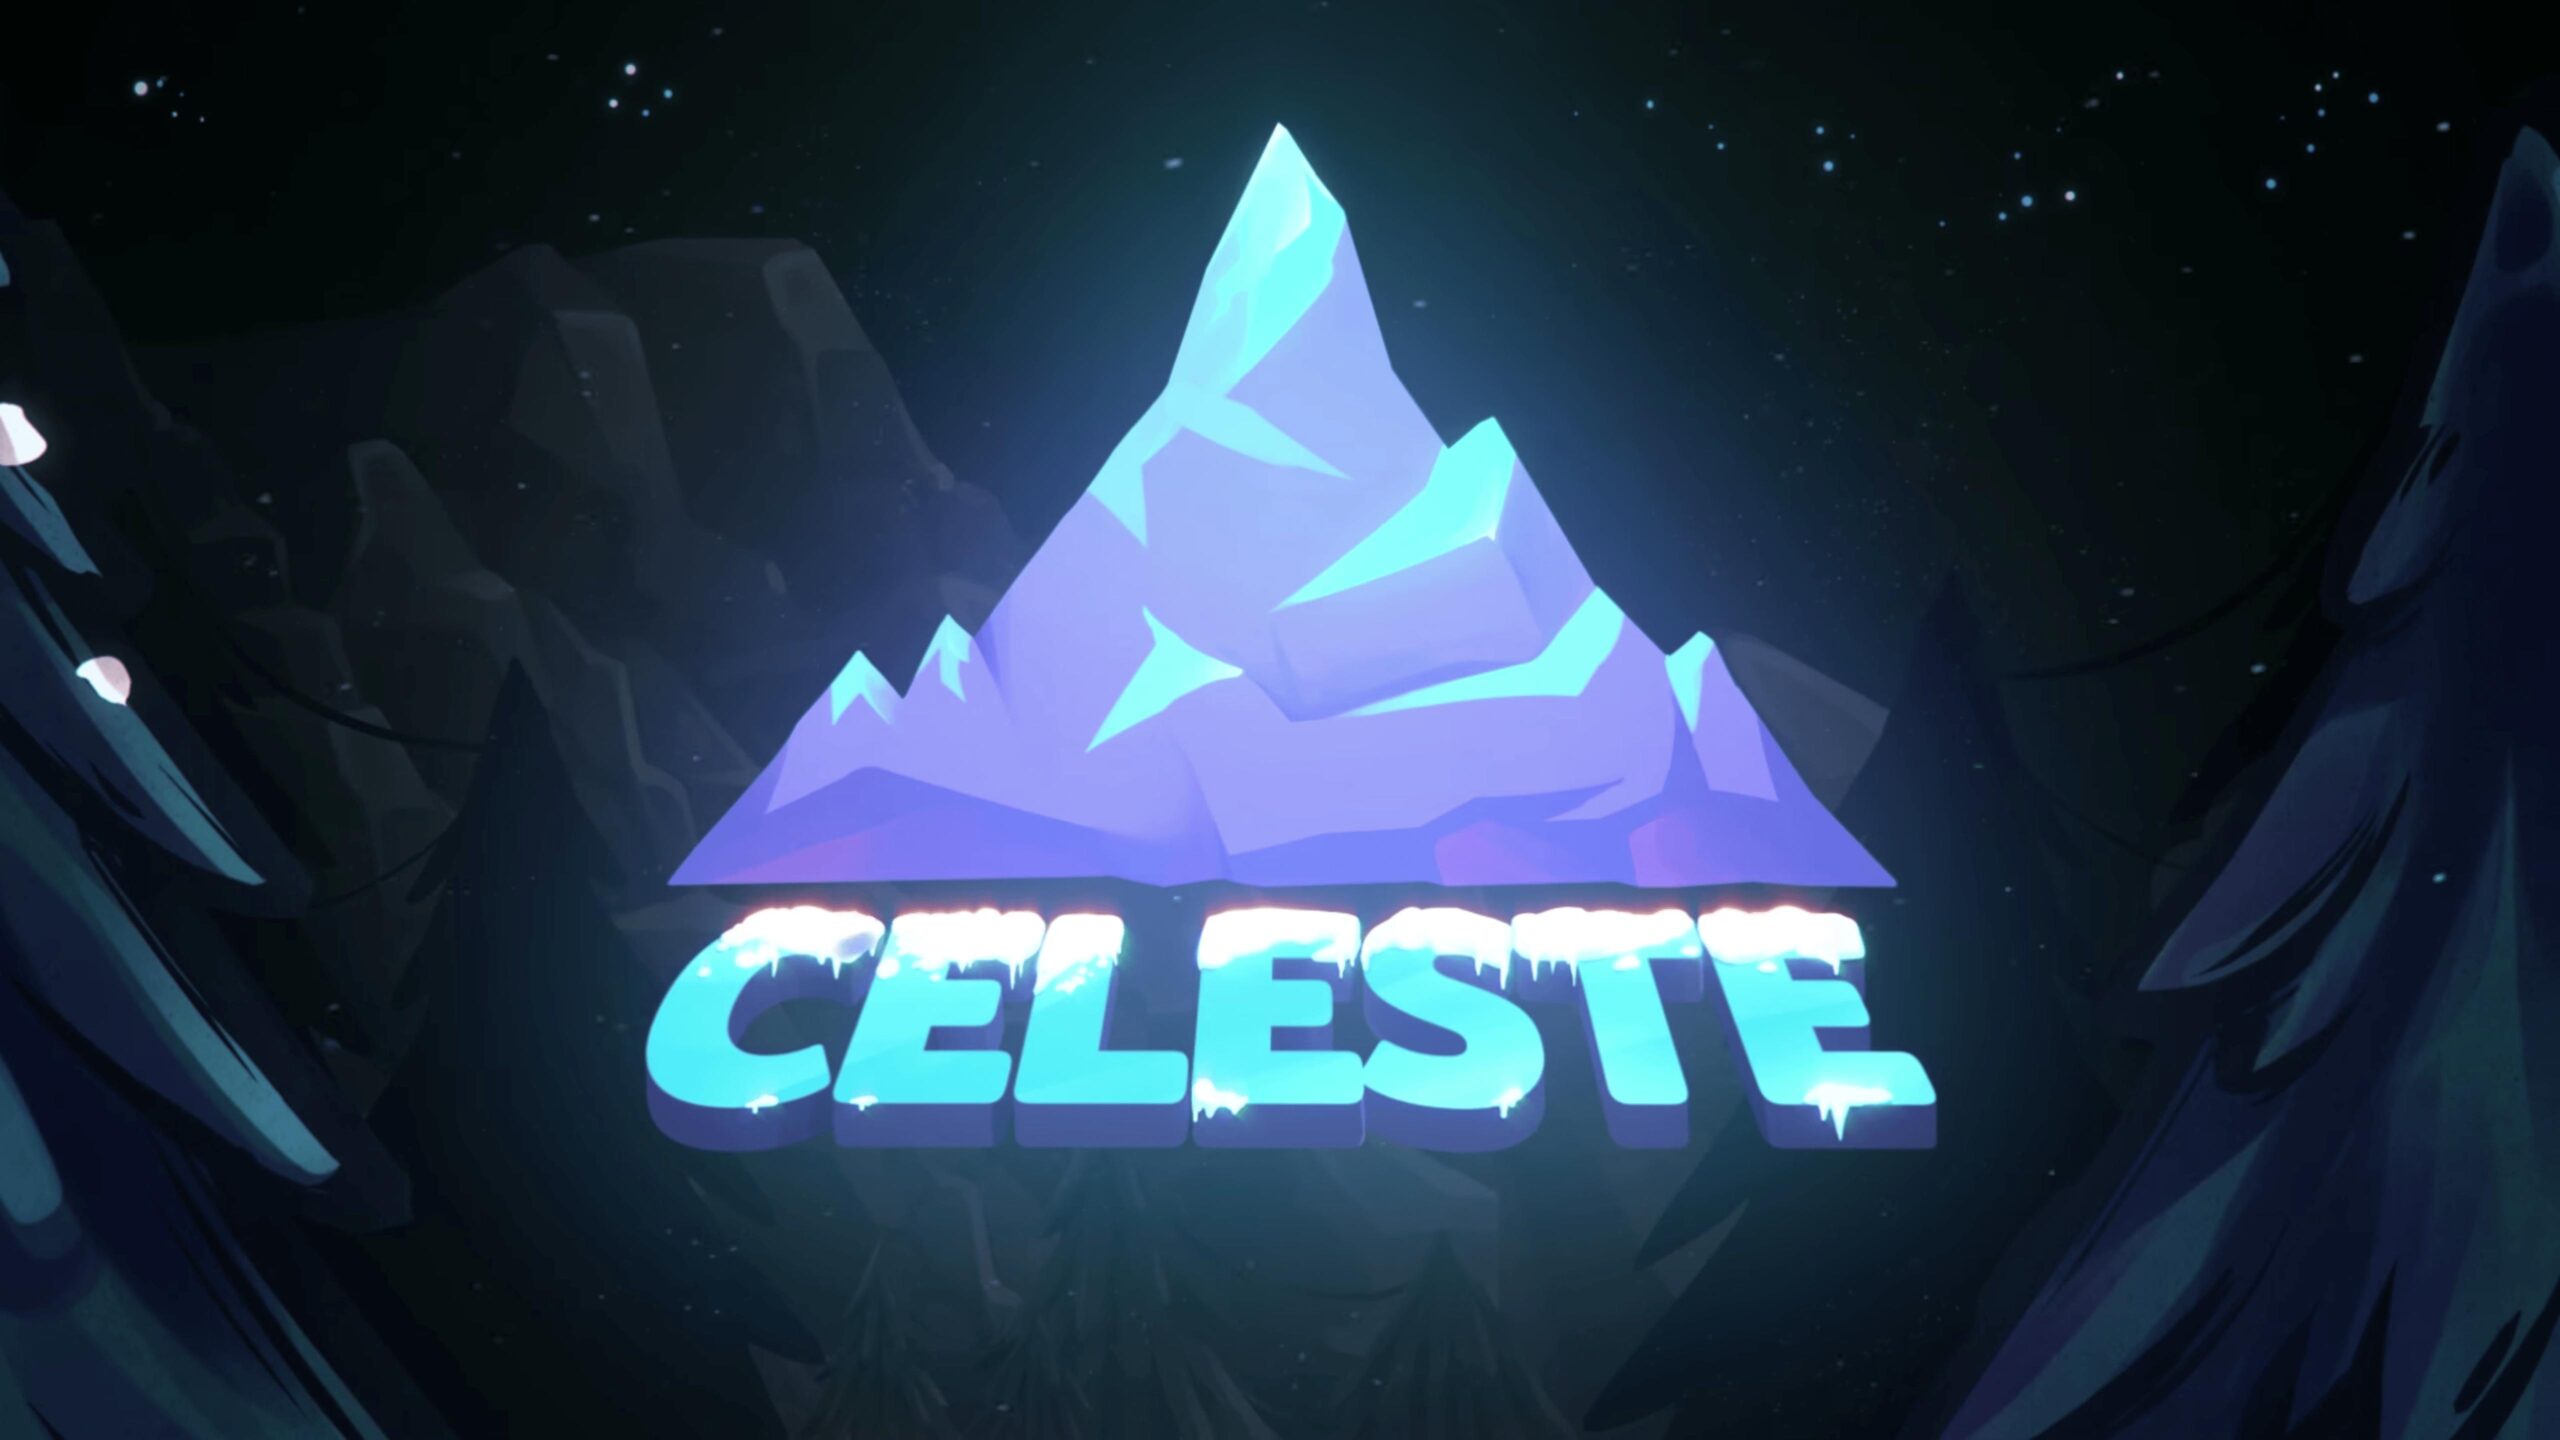 Celeste Game New Wallpaper, Celeste Game, Game